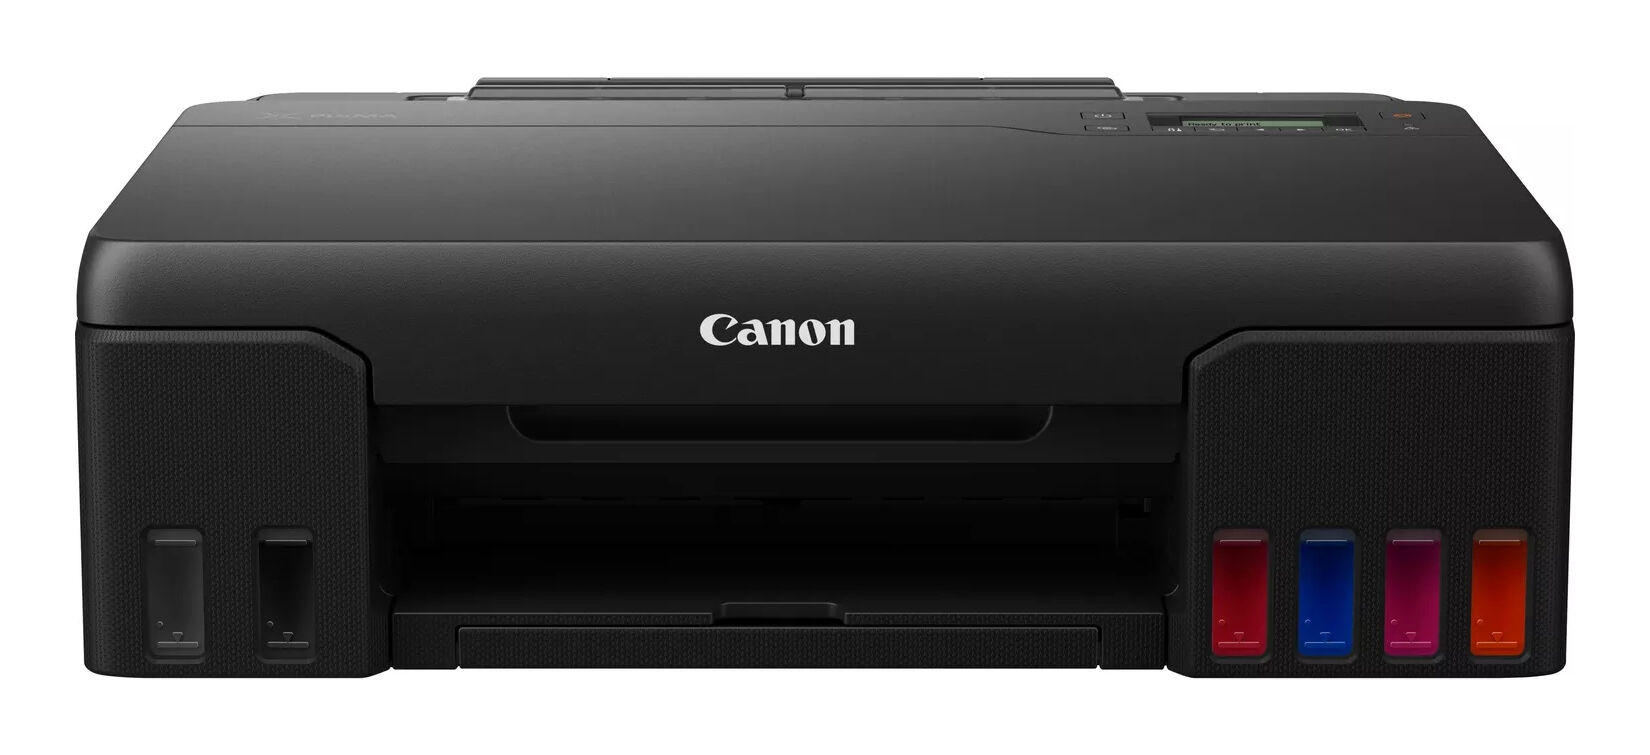 Canon Stampante inkjet  PIXMA G550 MegaTank stampante a getto d'inchiostro A colori 4800 x 1200 DPI A4 Wi-Fi [4621C006]